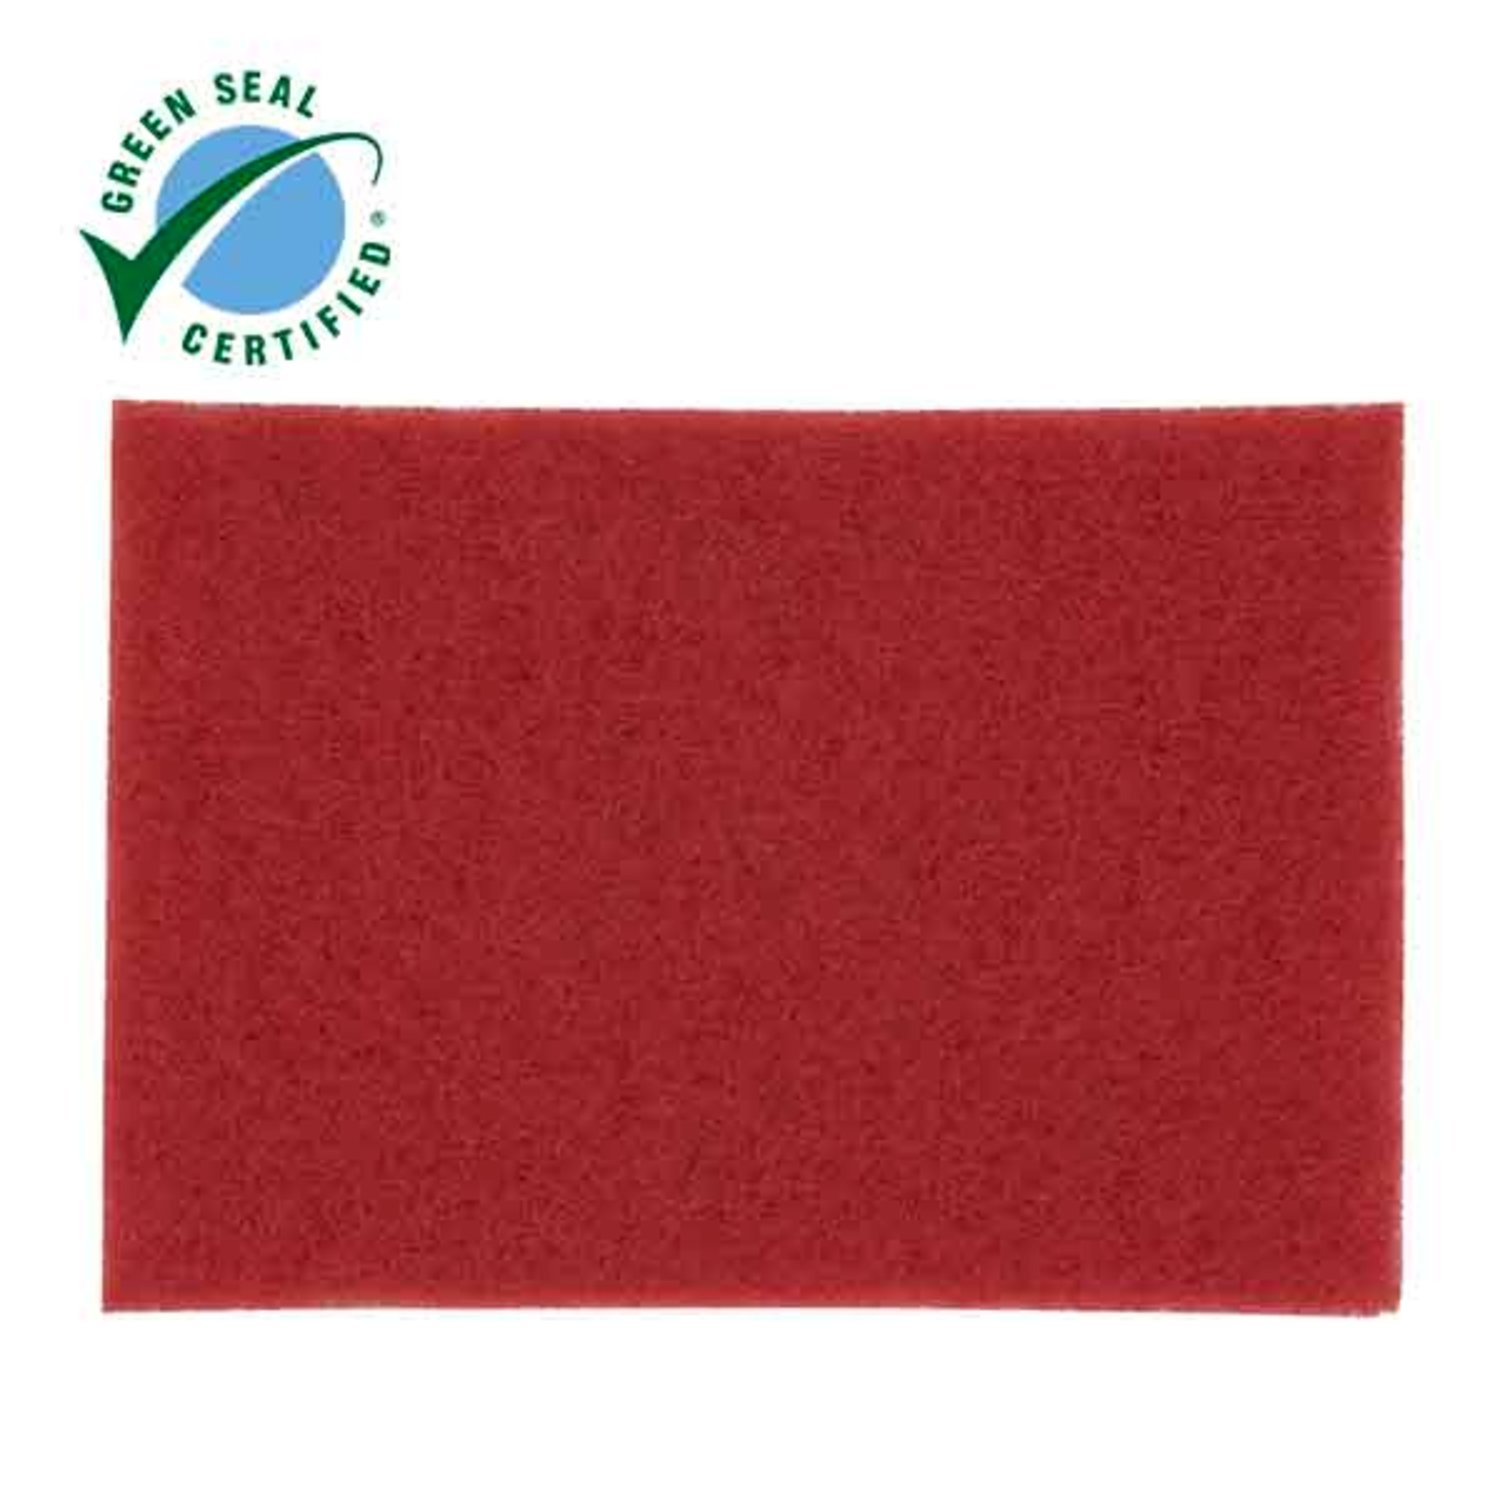 7000052518 - Scotch-Brite Red Buffer Pad 5100, Red, 711 mm x 356 mm, 28 in x 14 in,
10 ea/Case